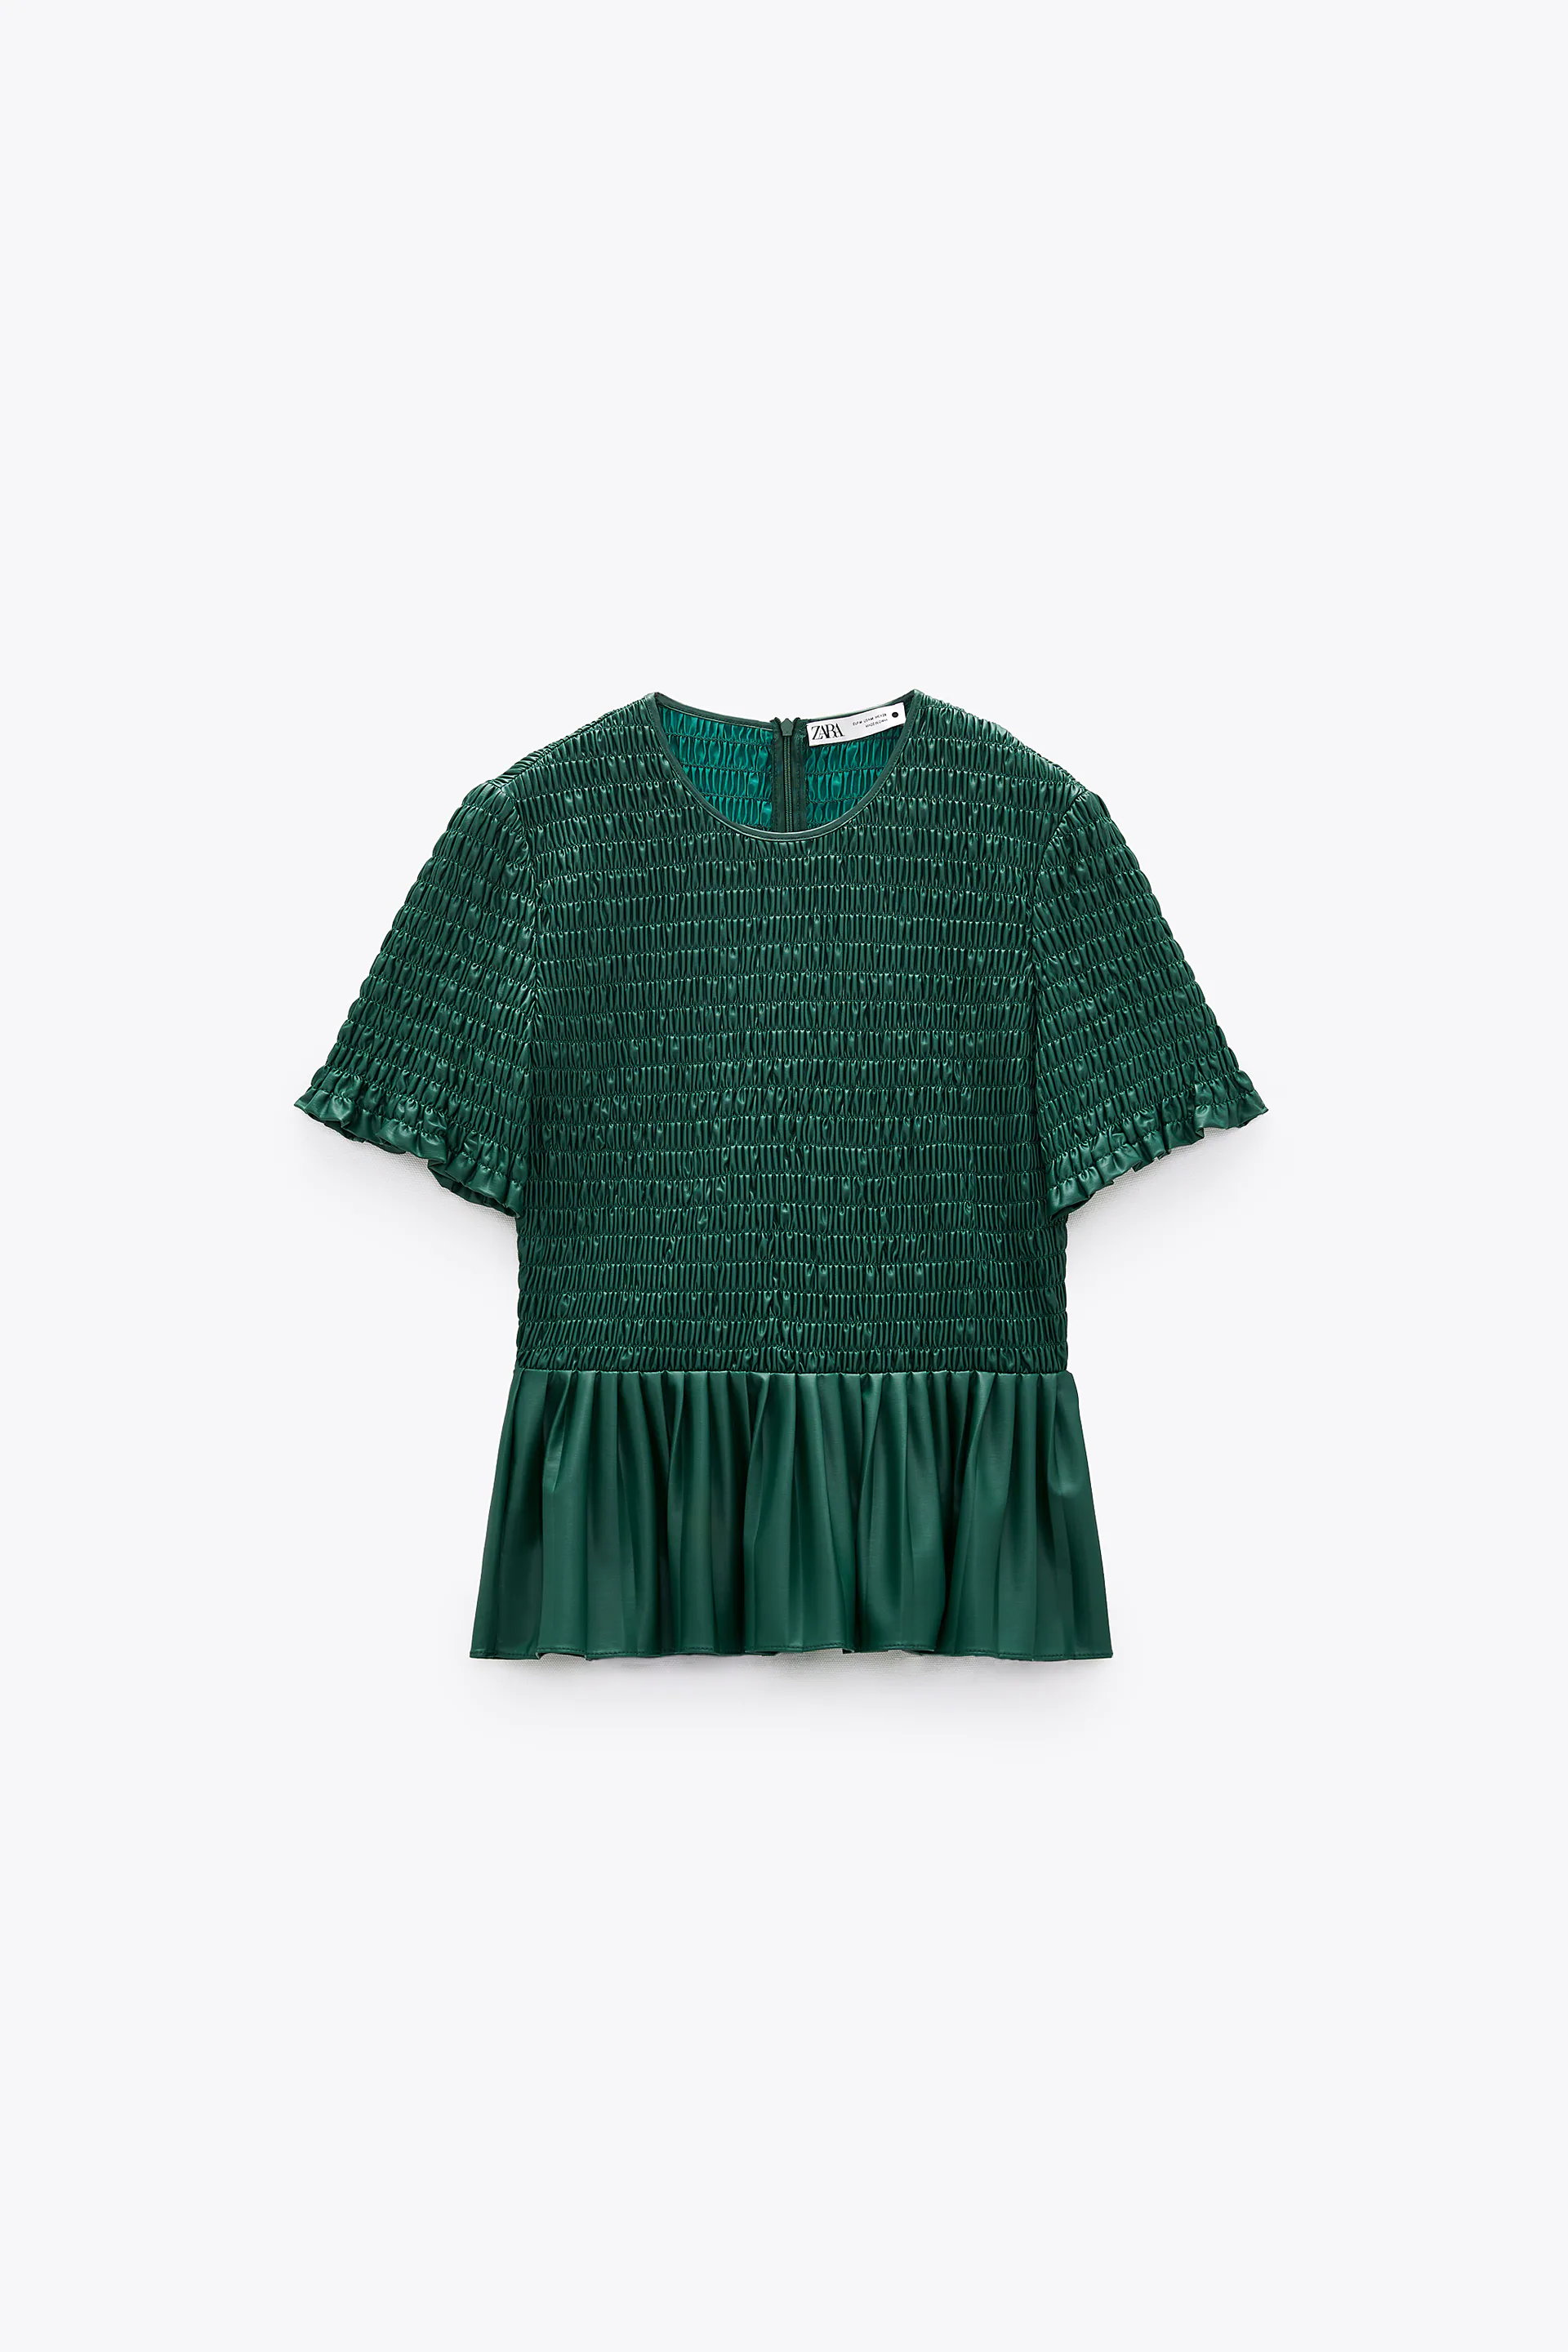 bluza verde zara cu elastic si pliuri [6]